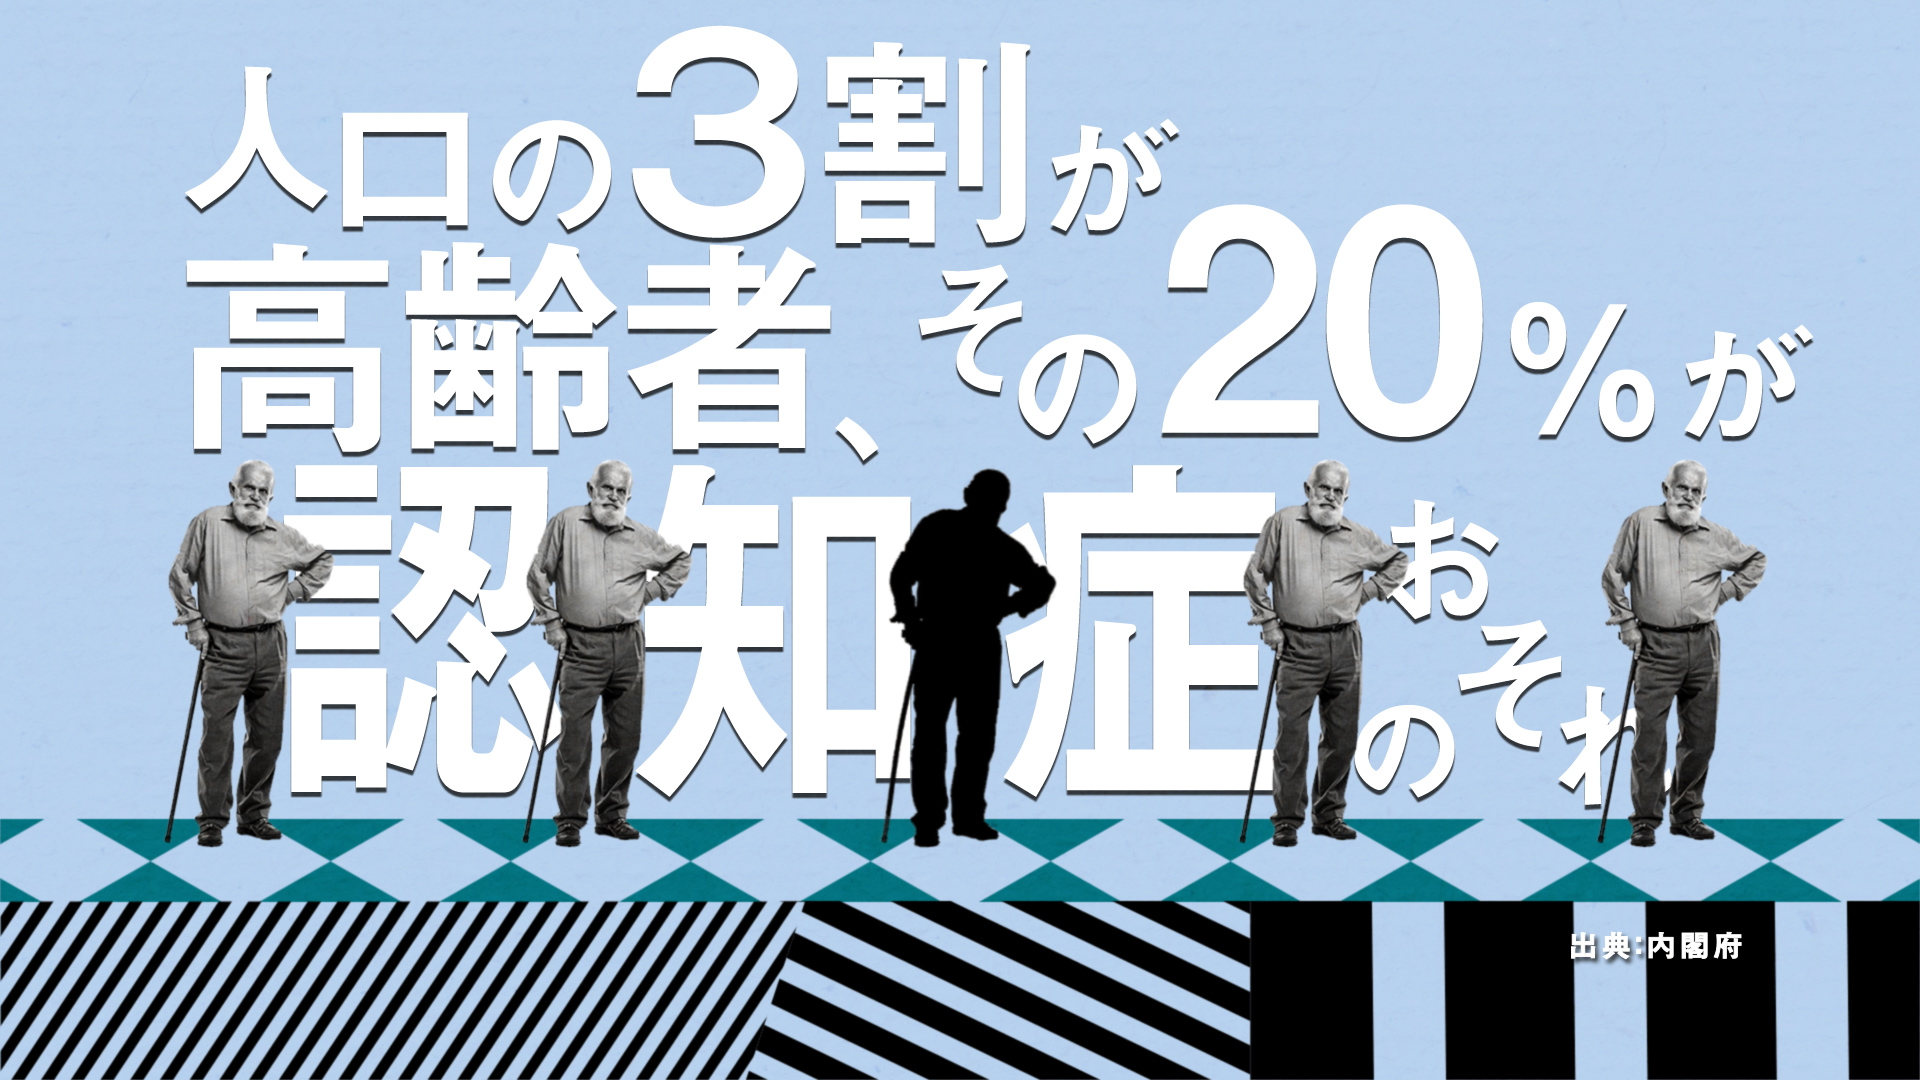 あなたが100歳になるまでに日本で起こること | 人生100年の歩き方